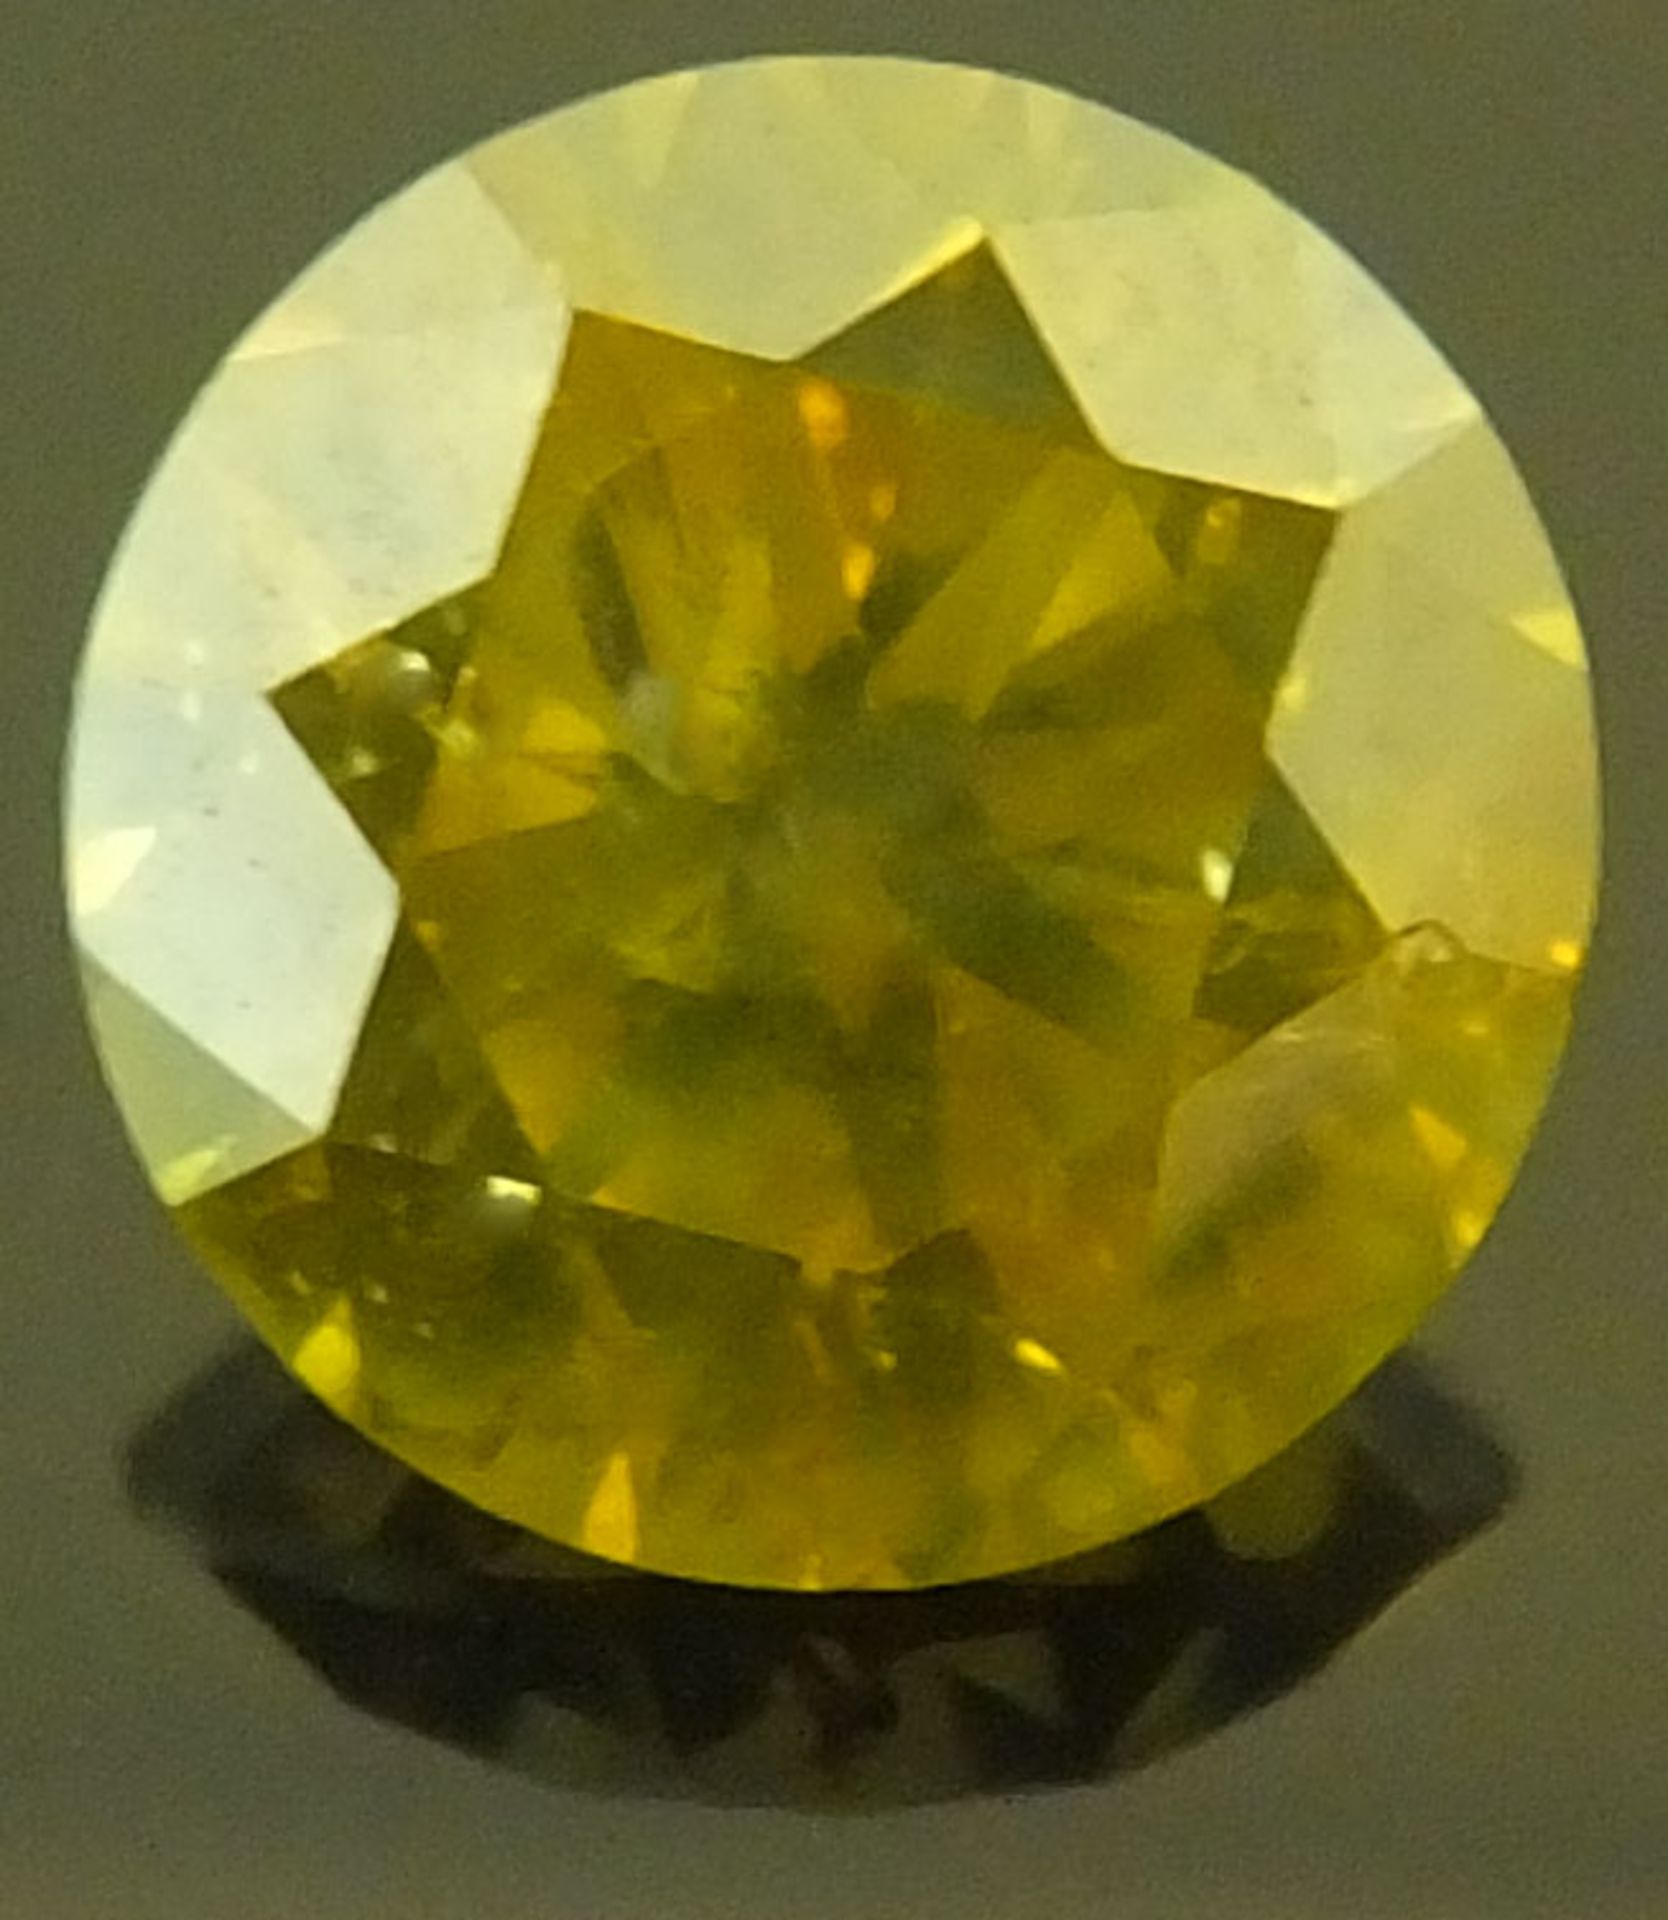 A yellow 1.55 carat Diamond